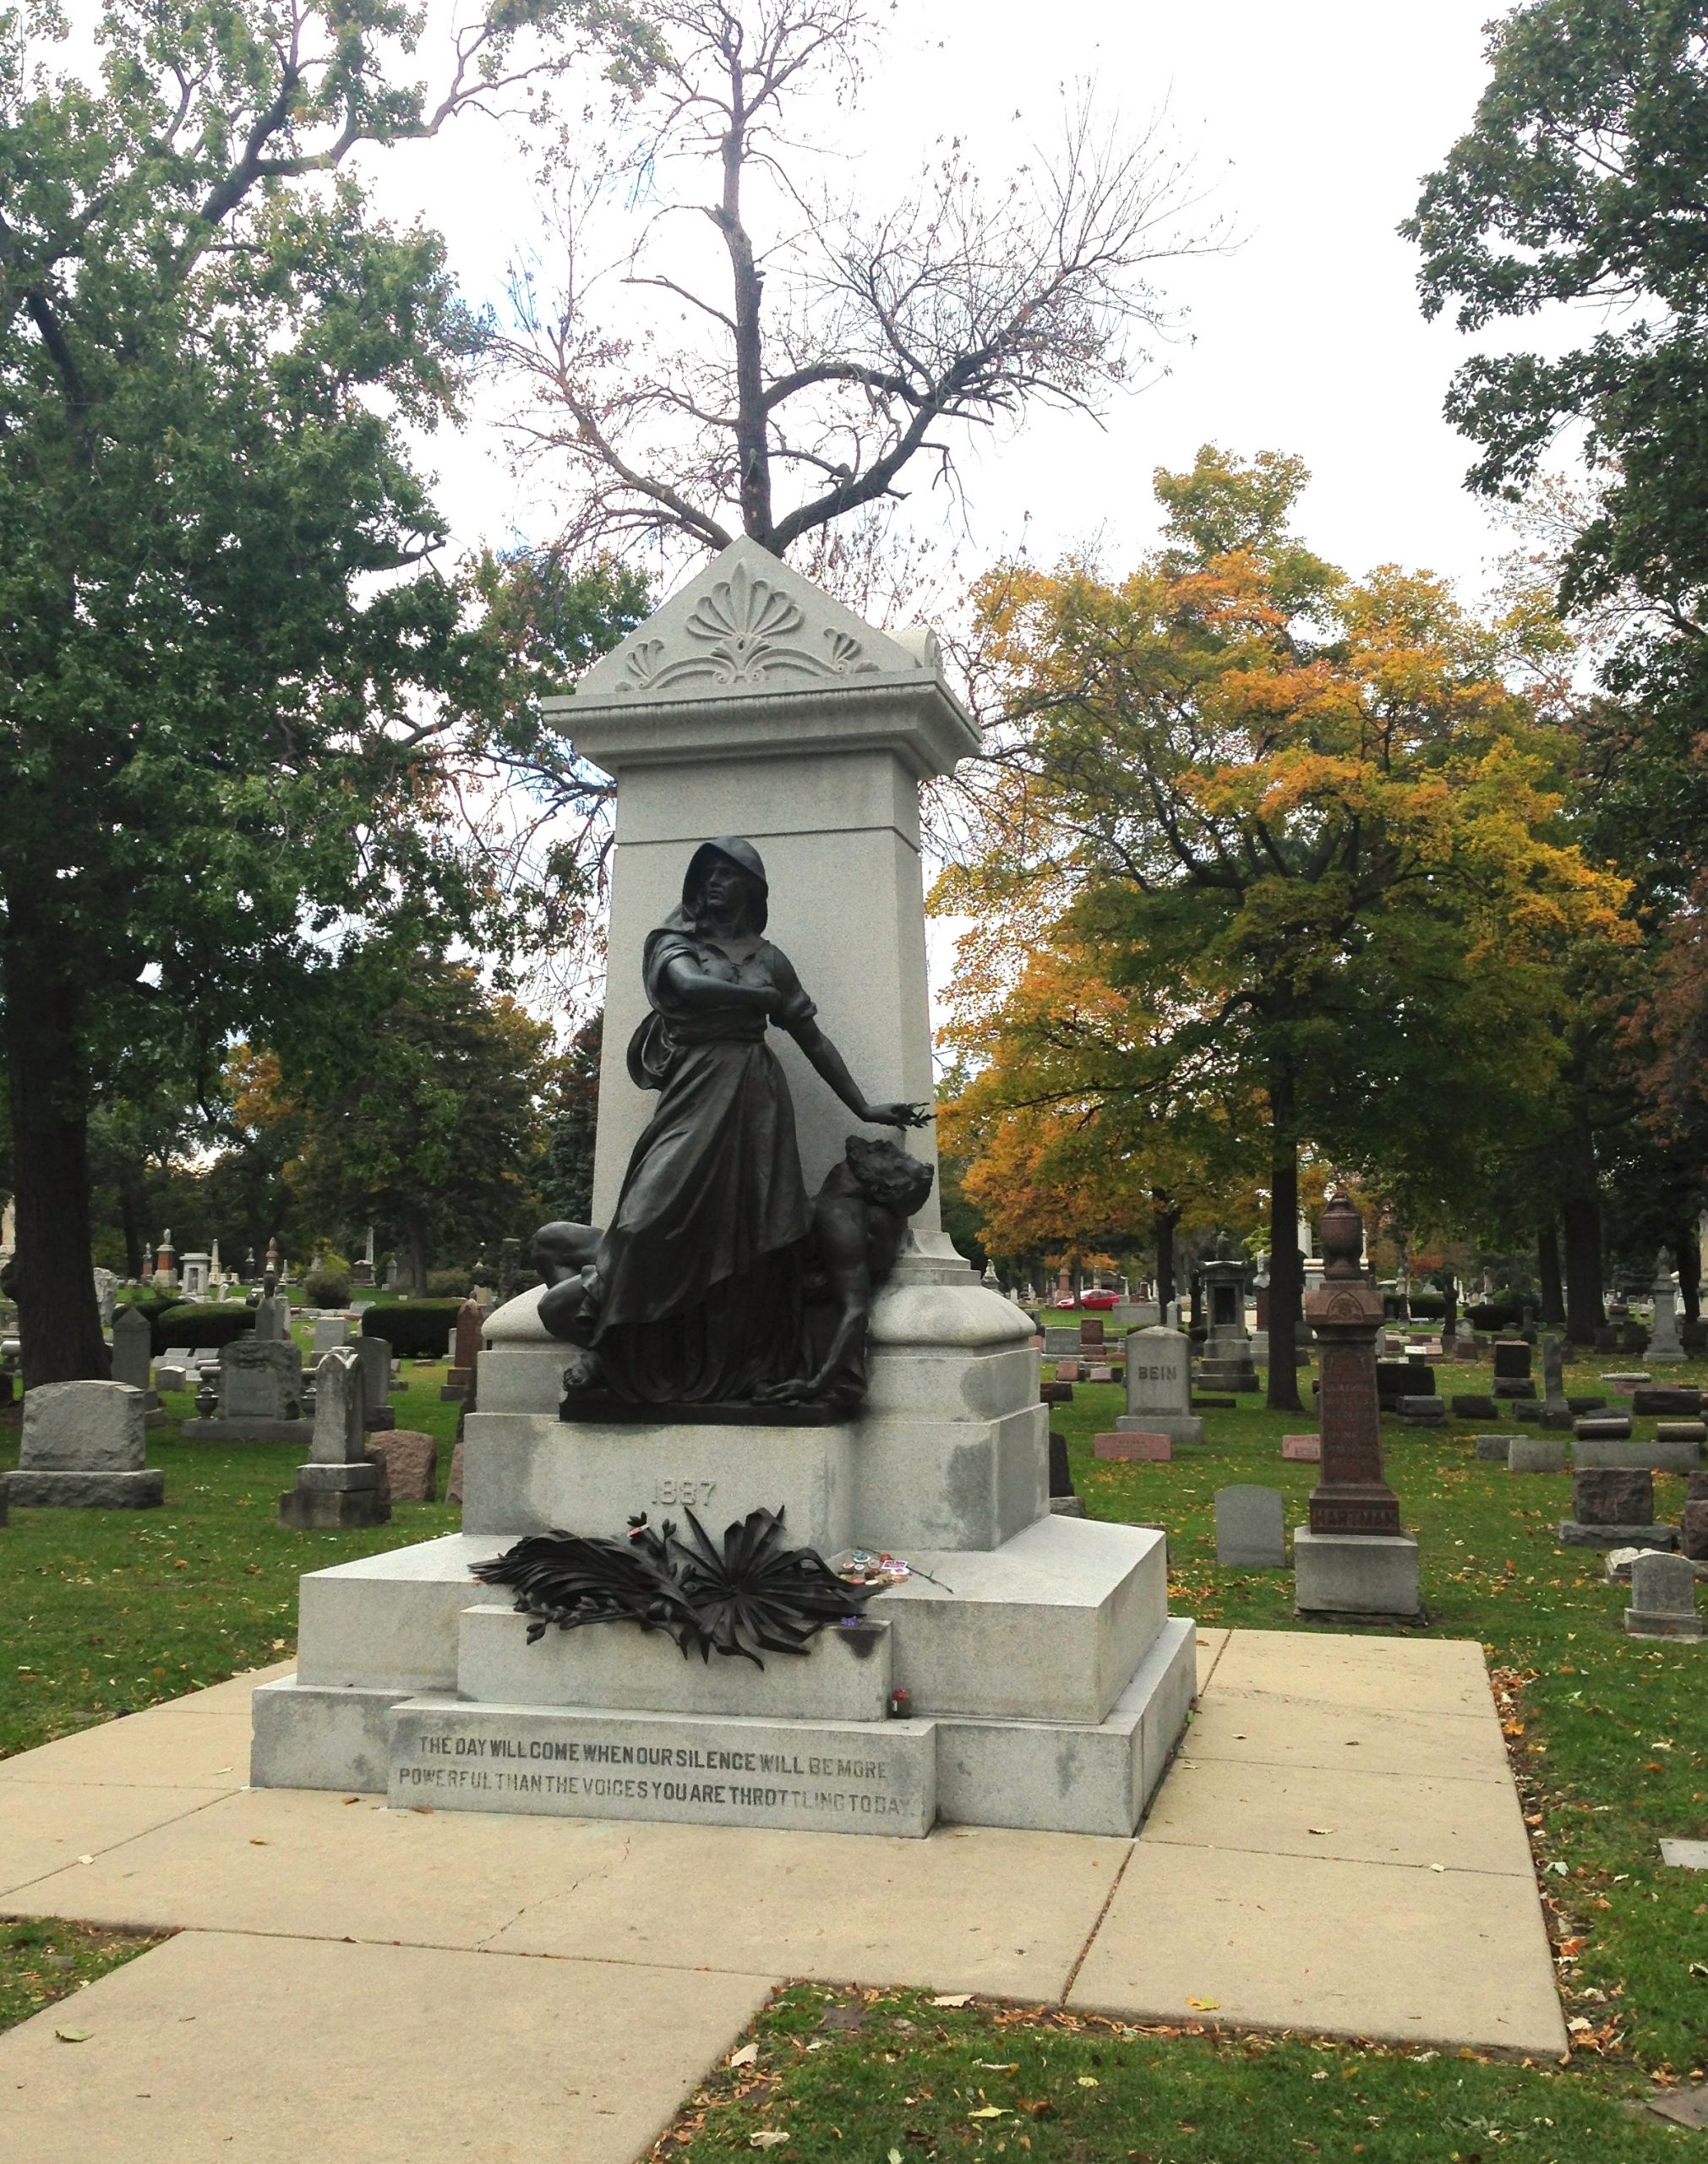 haymarket sculpture in Chicago cemeteries